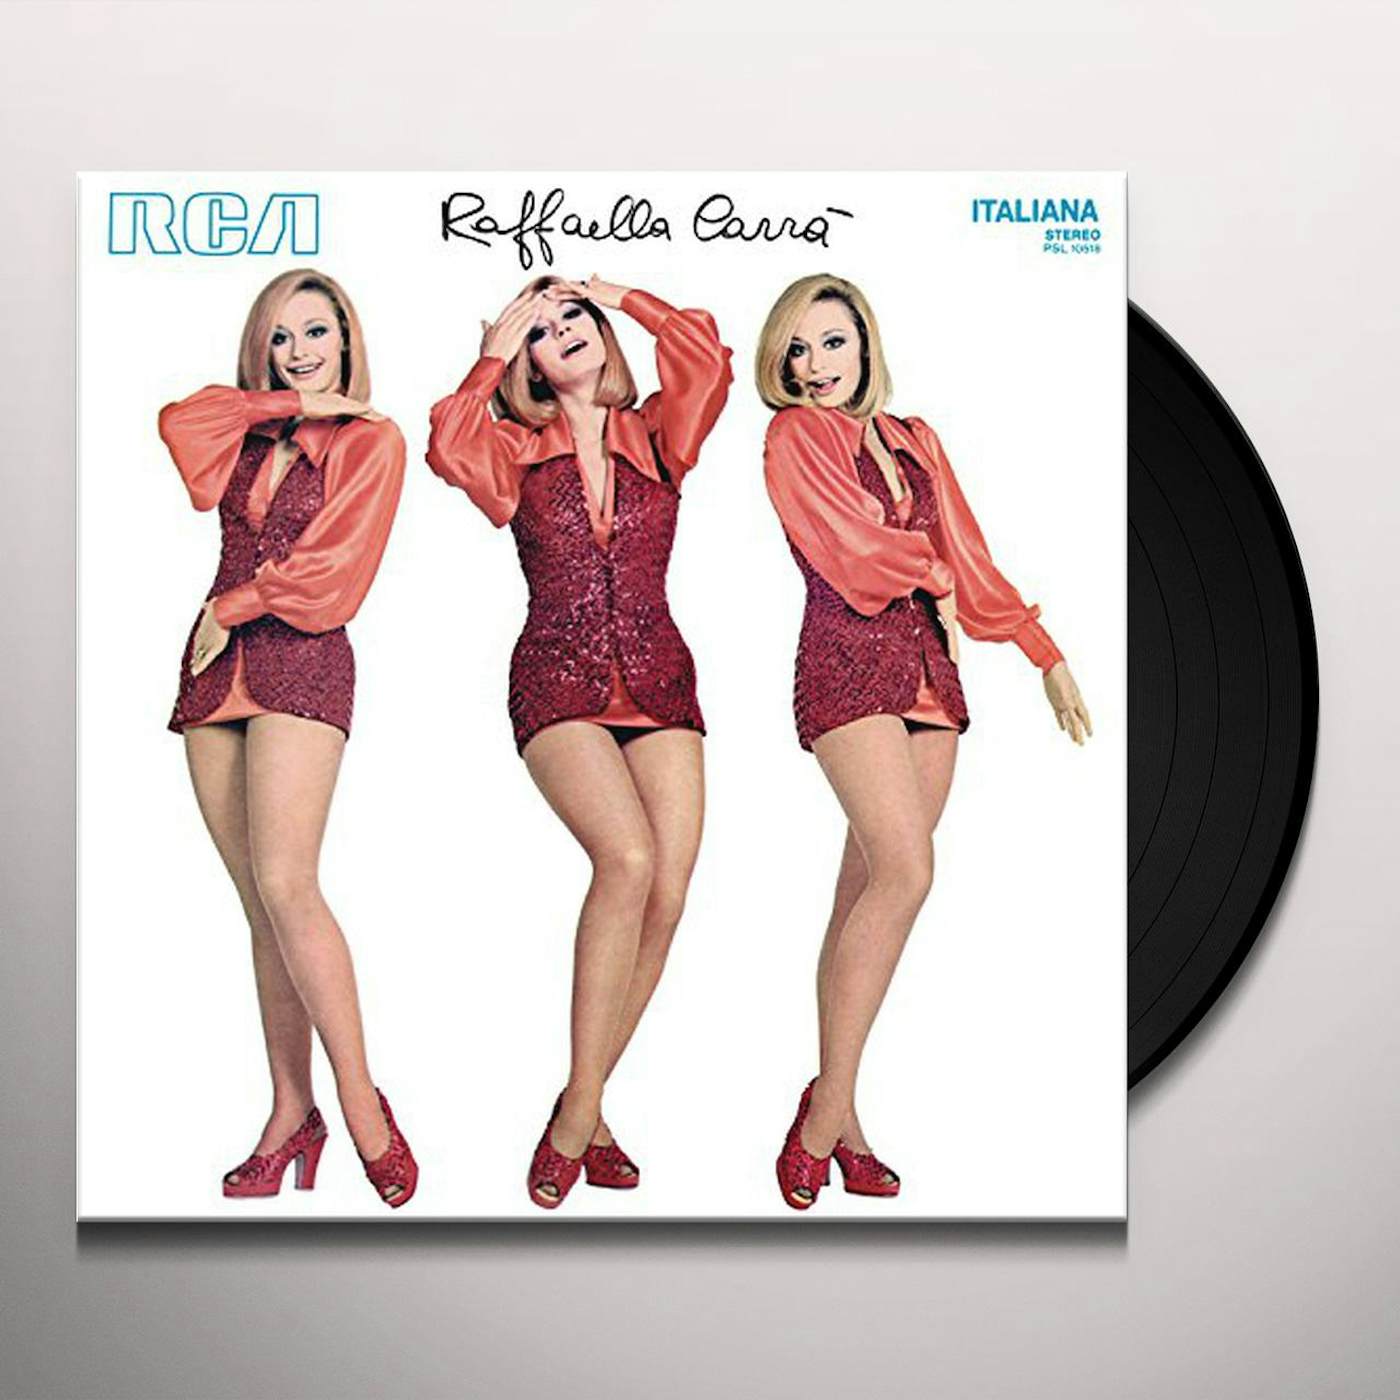 Raffaella Carrà Vinyl Record